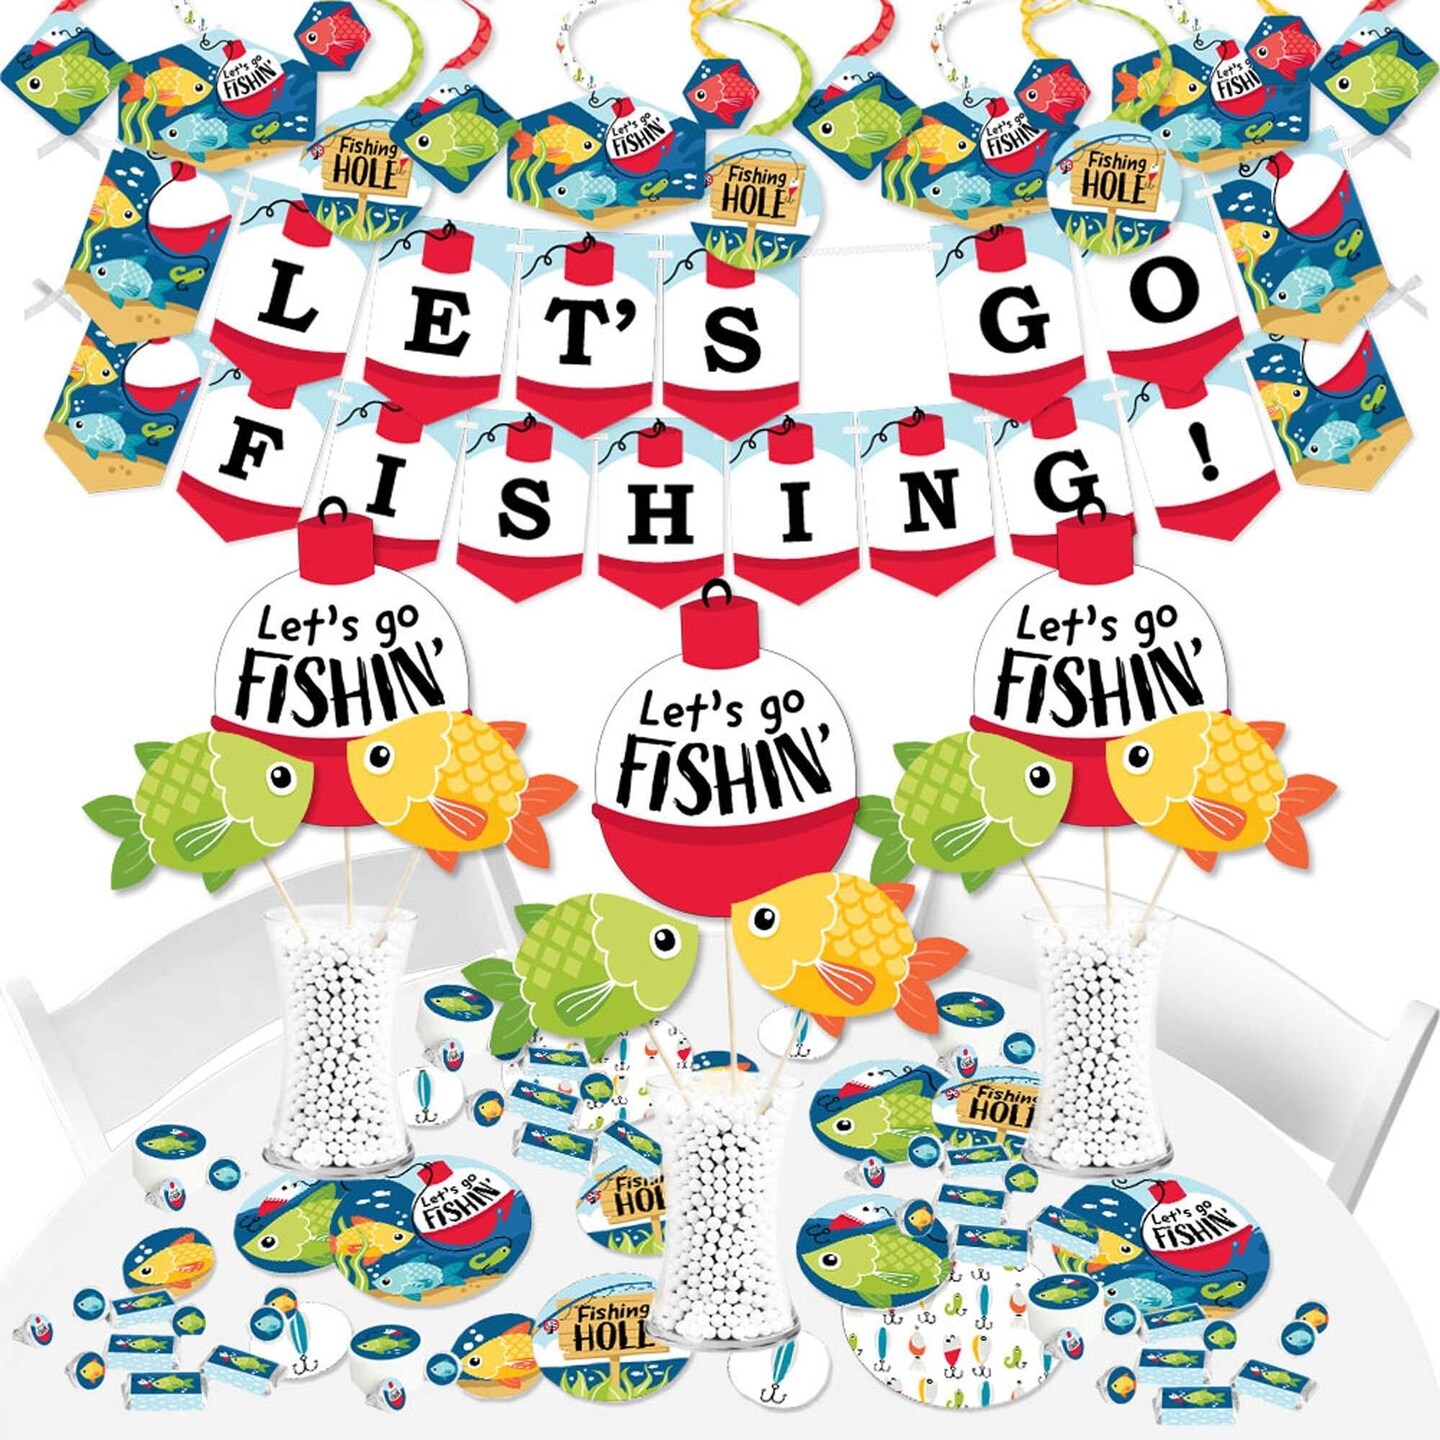 GONE FISHING PARTY Cups - Fishing Party Fishing Party Favors